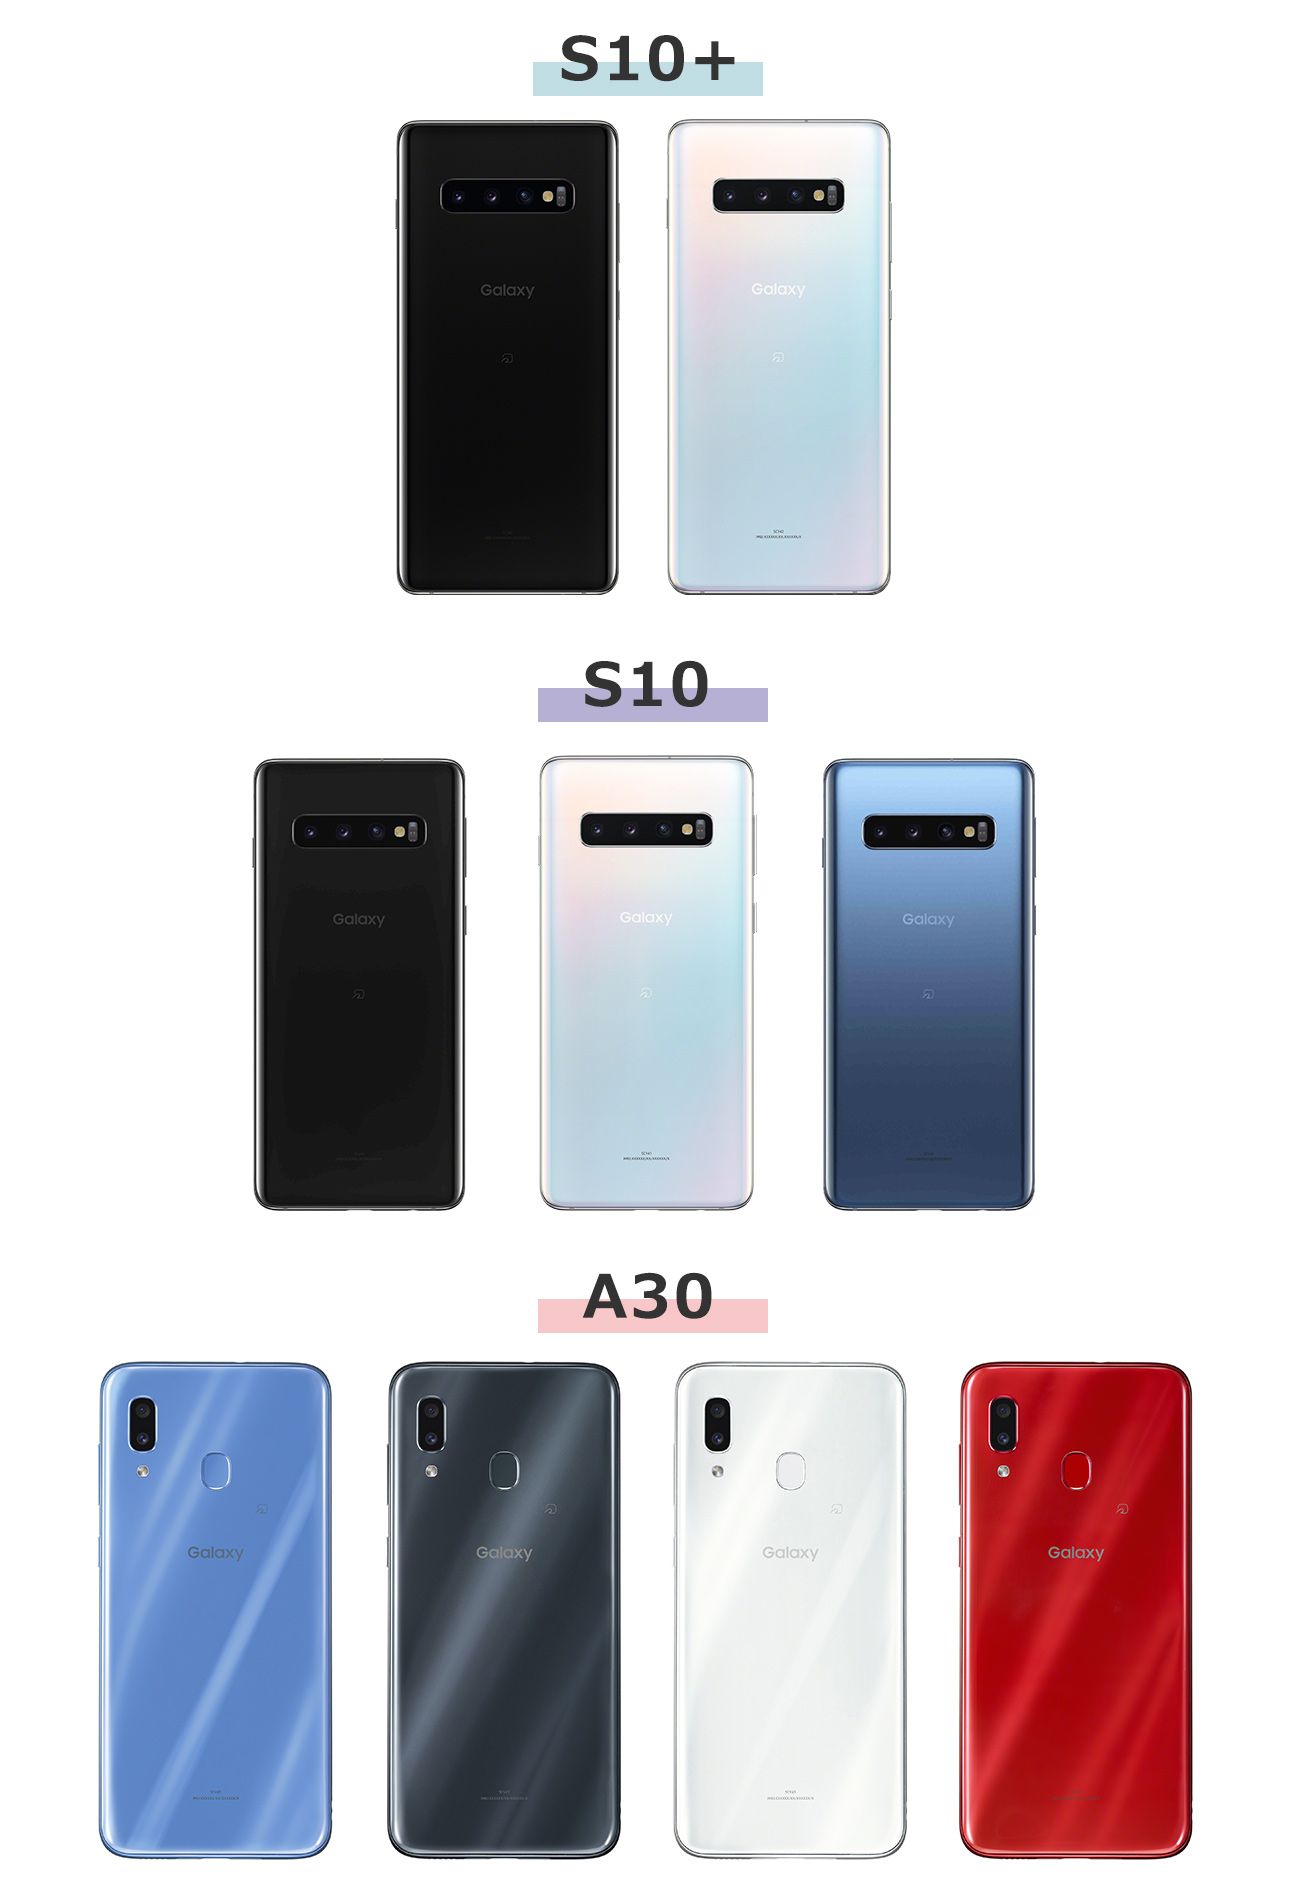 Galaxy S10+、S10、A30のカラーバリエーション